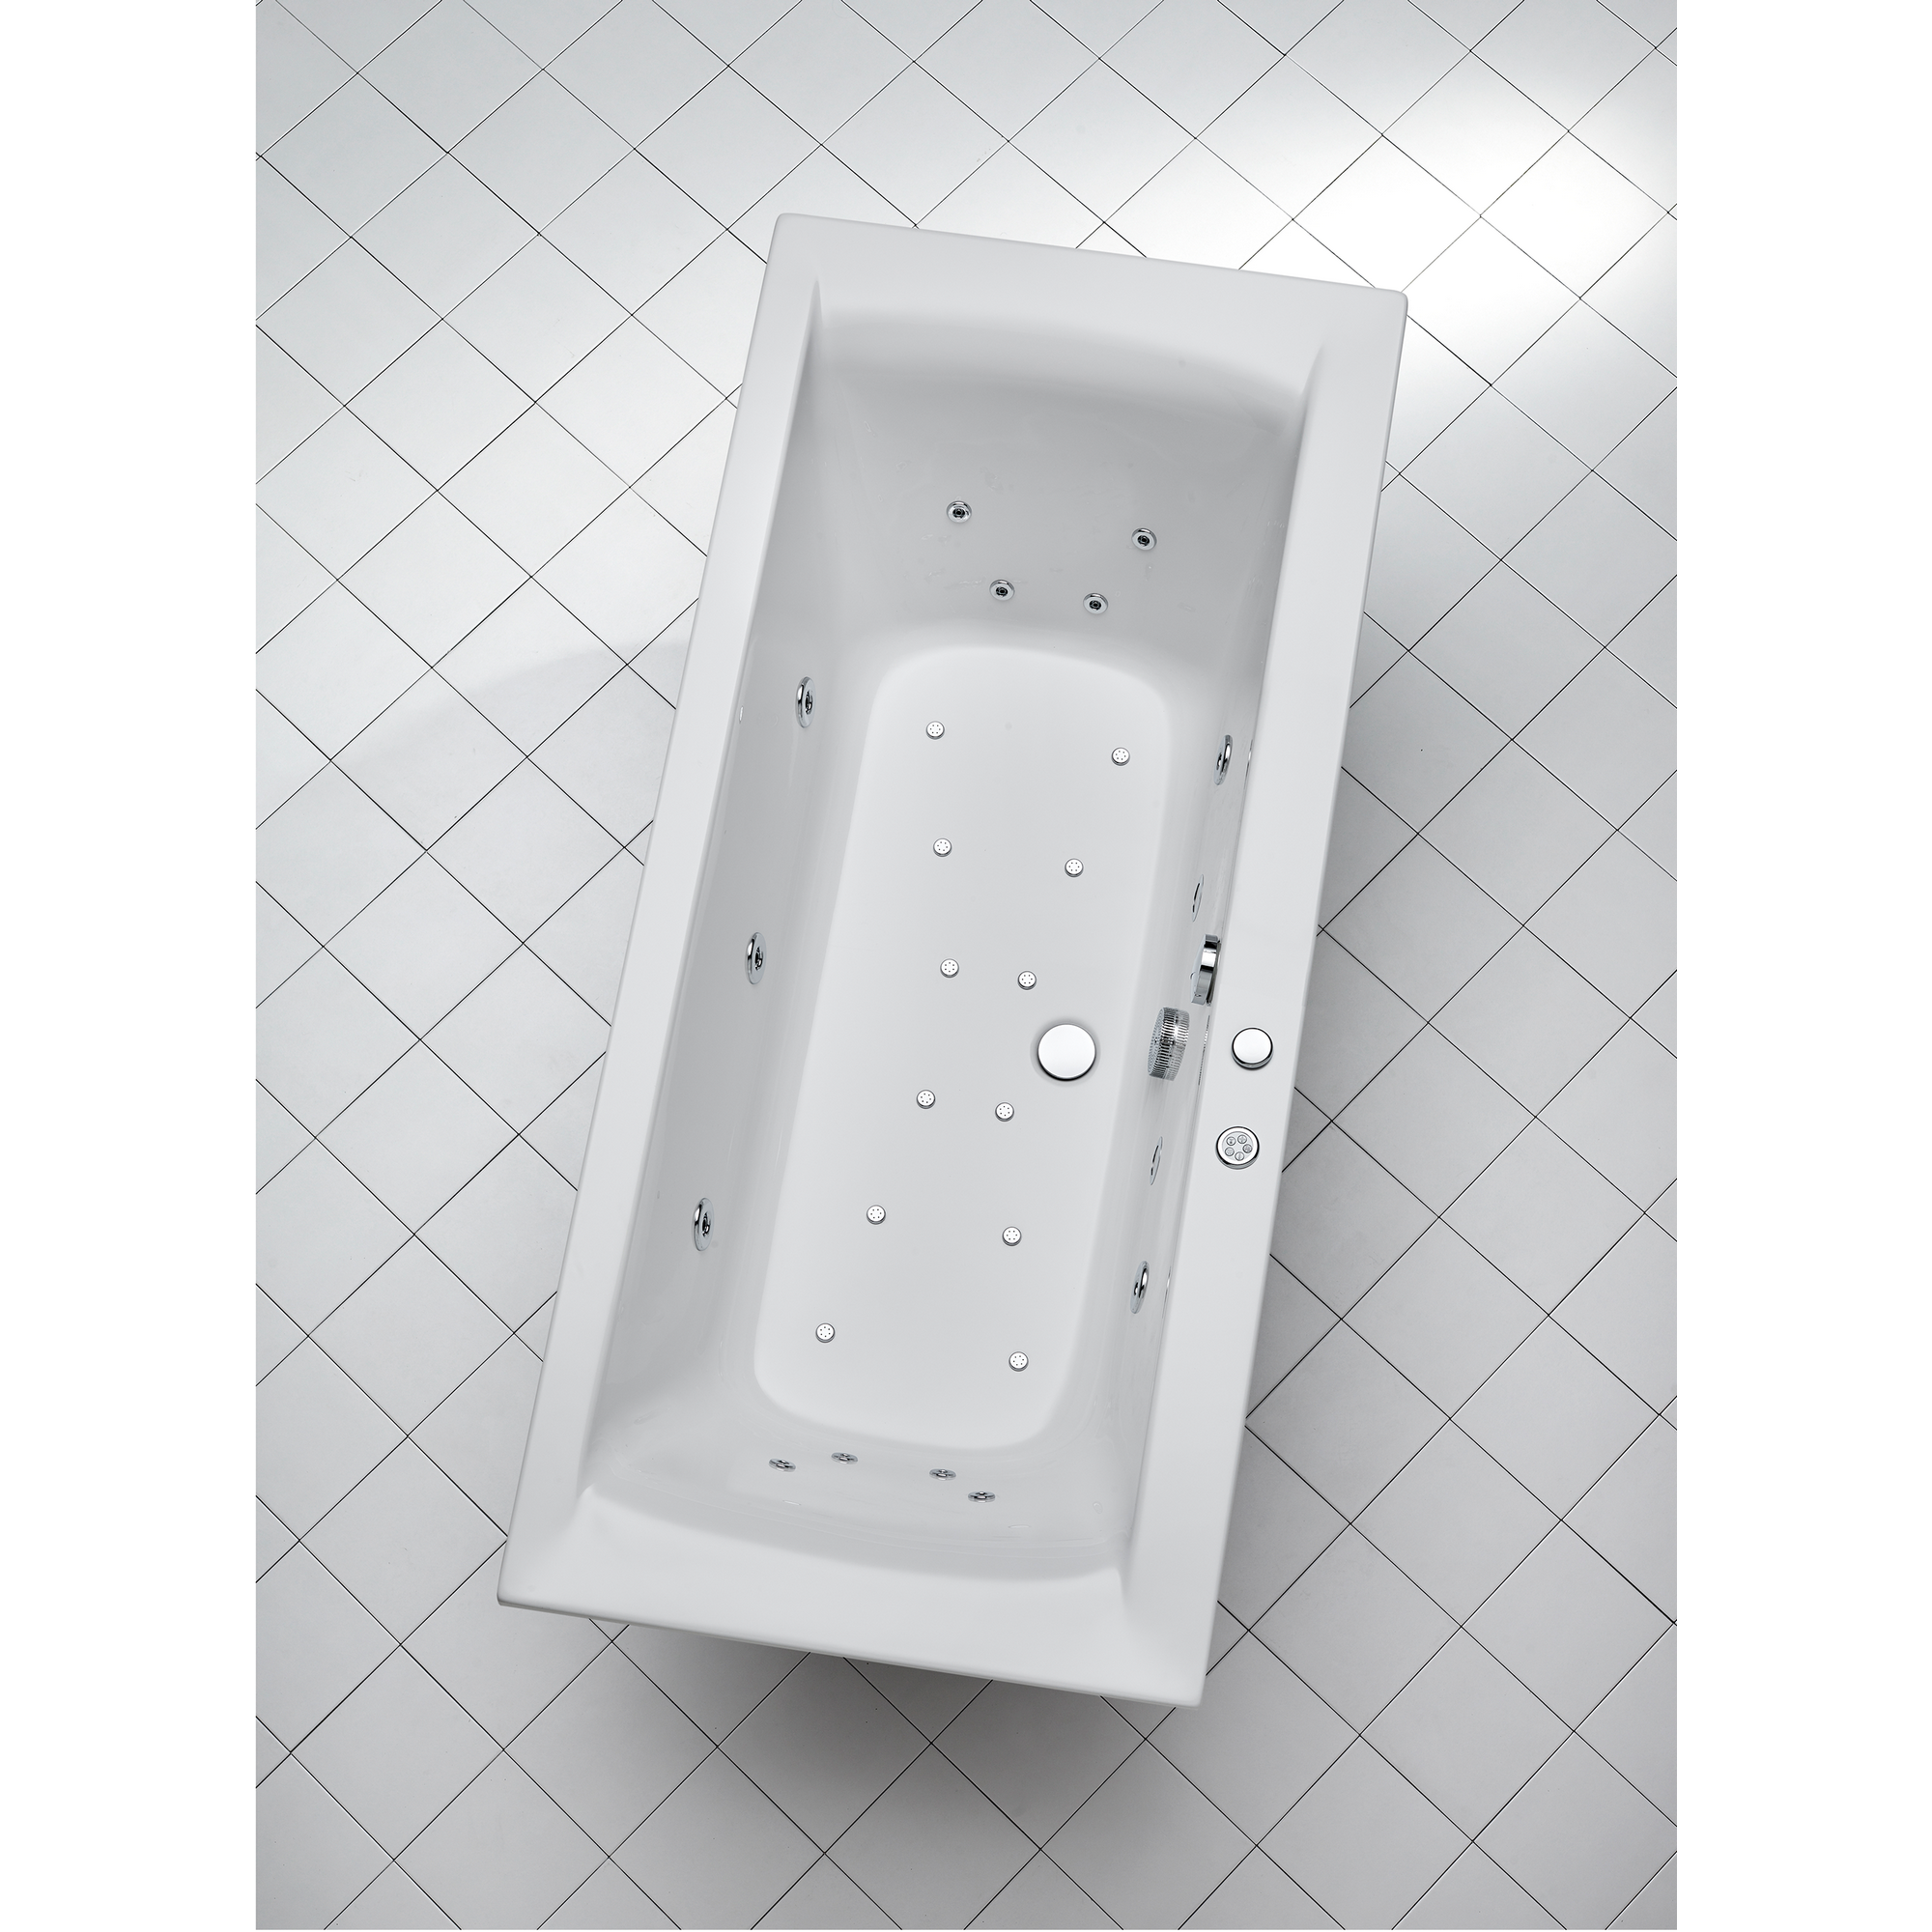 Whirlpool-Komplettset 'Rosa' Sanitäracryl weiß 190 x 90 x 45 cm + product picture